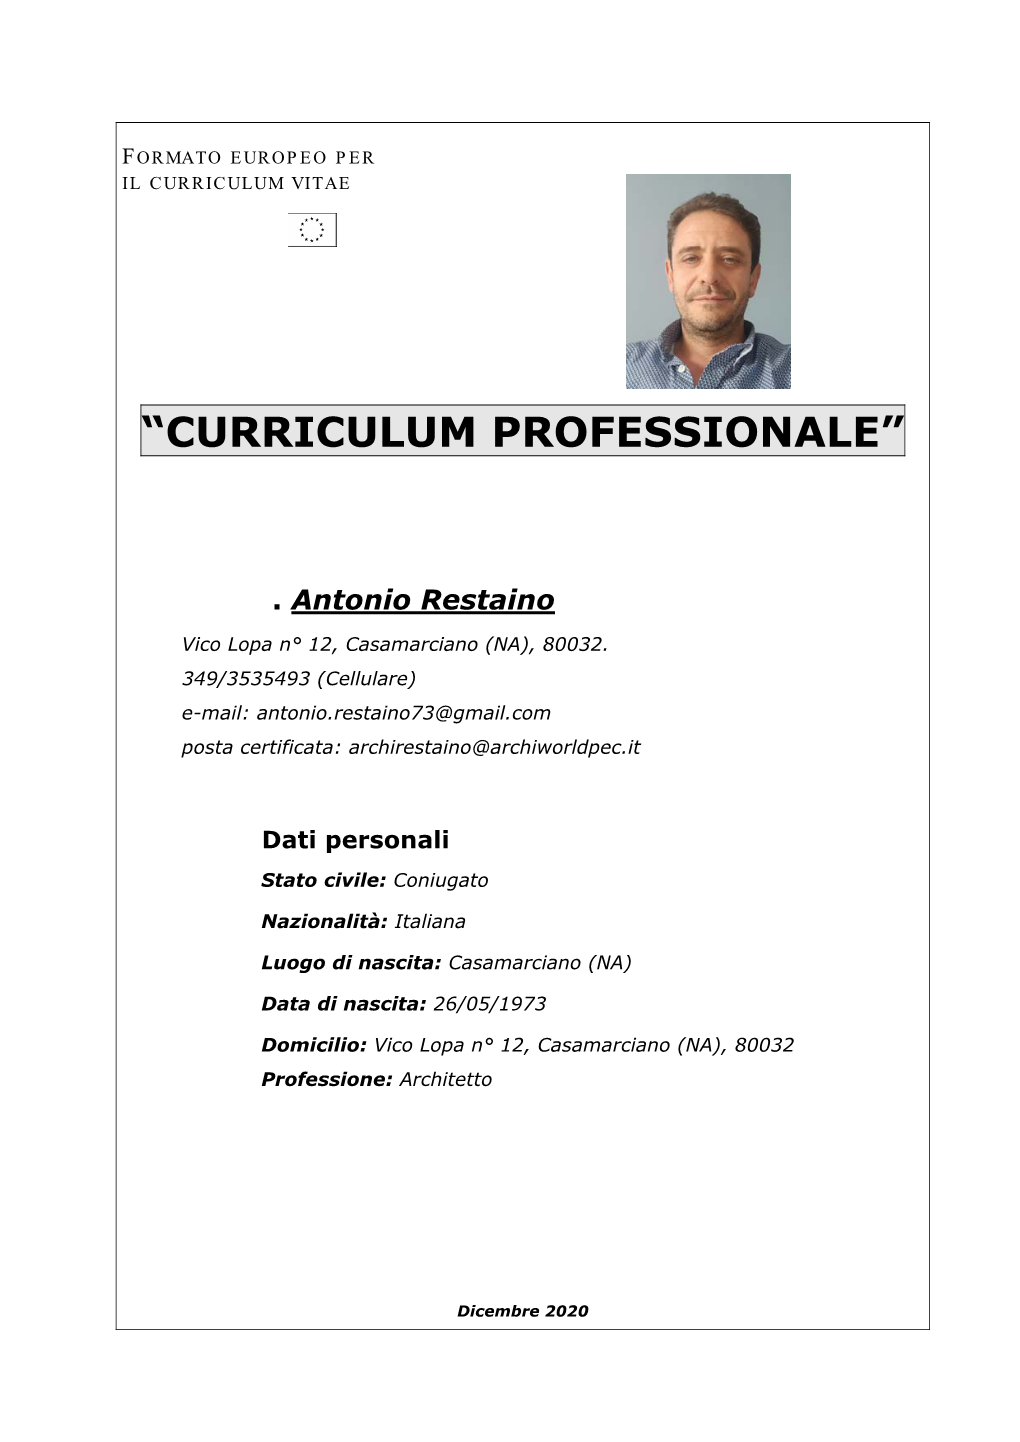 “Curriculum Professionale”